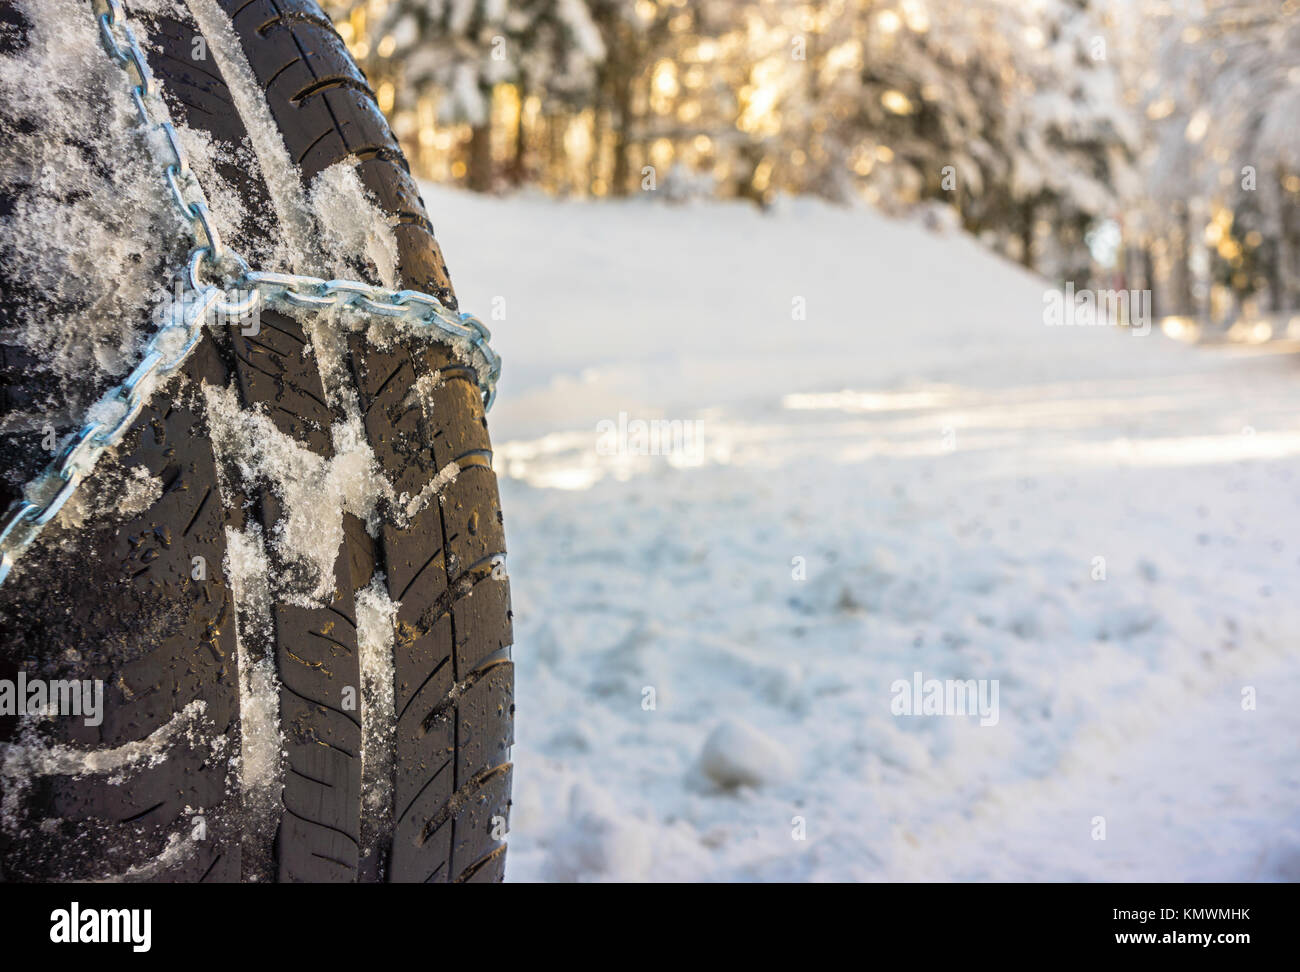 Libre de chaînes à neige montée sur une roue de voiture enneigée avec copie grand espace sur la gauche. Banque D'Images